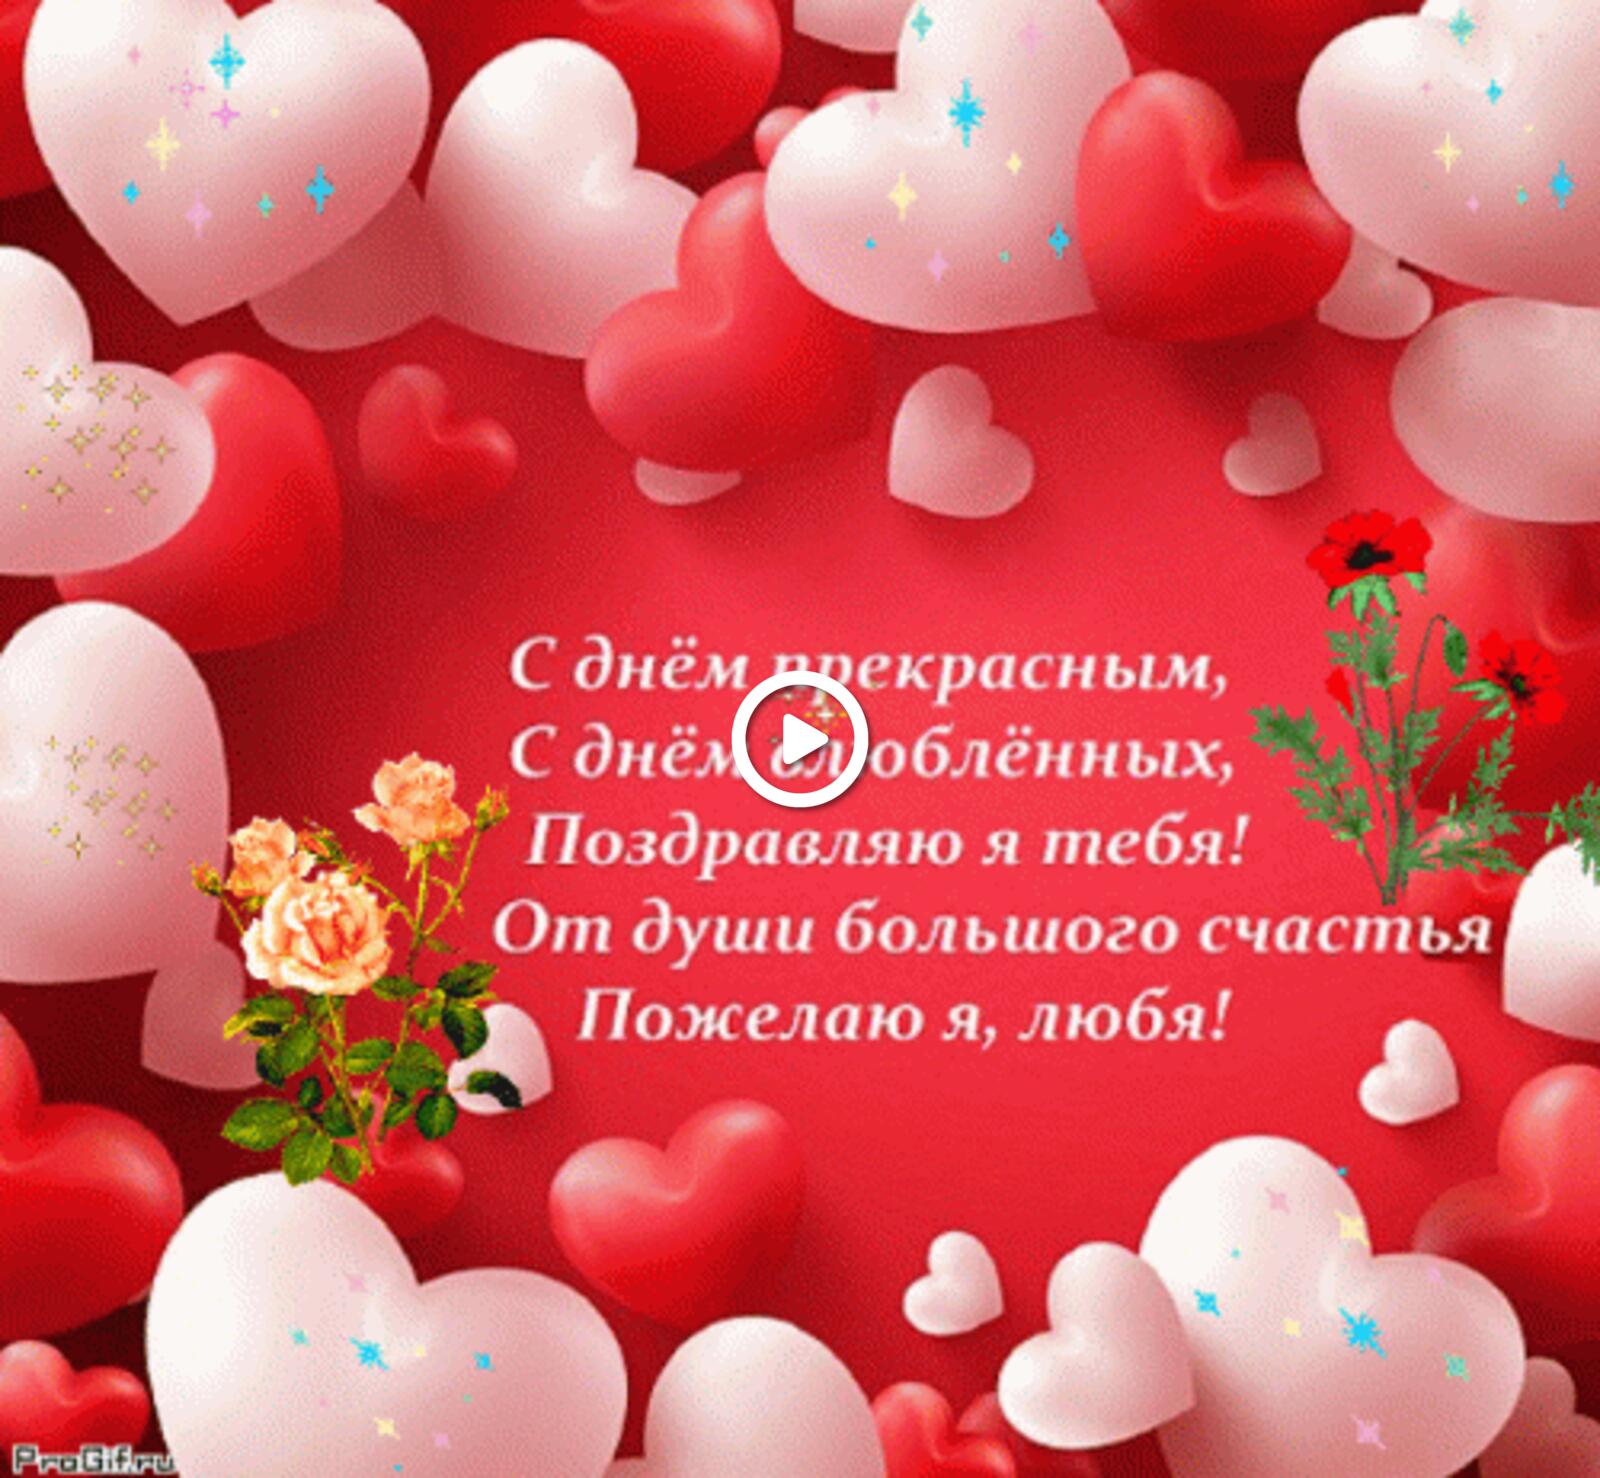 verse valentines Valentine day